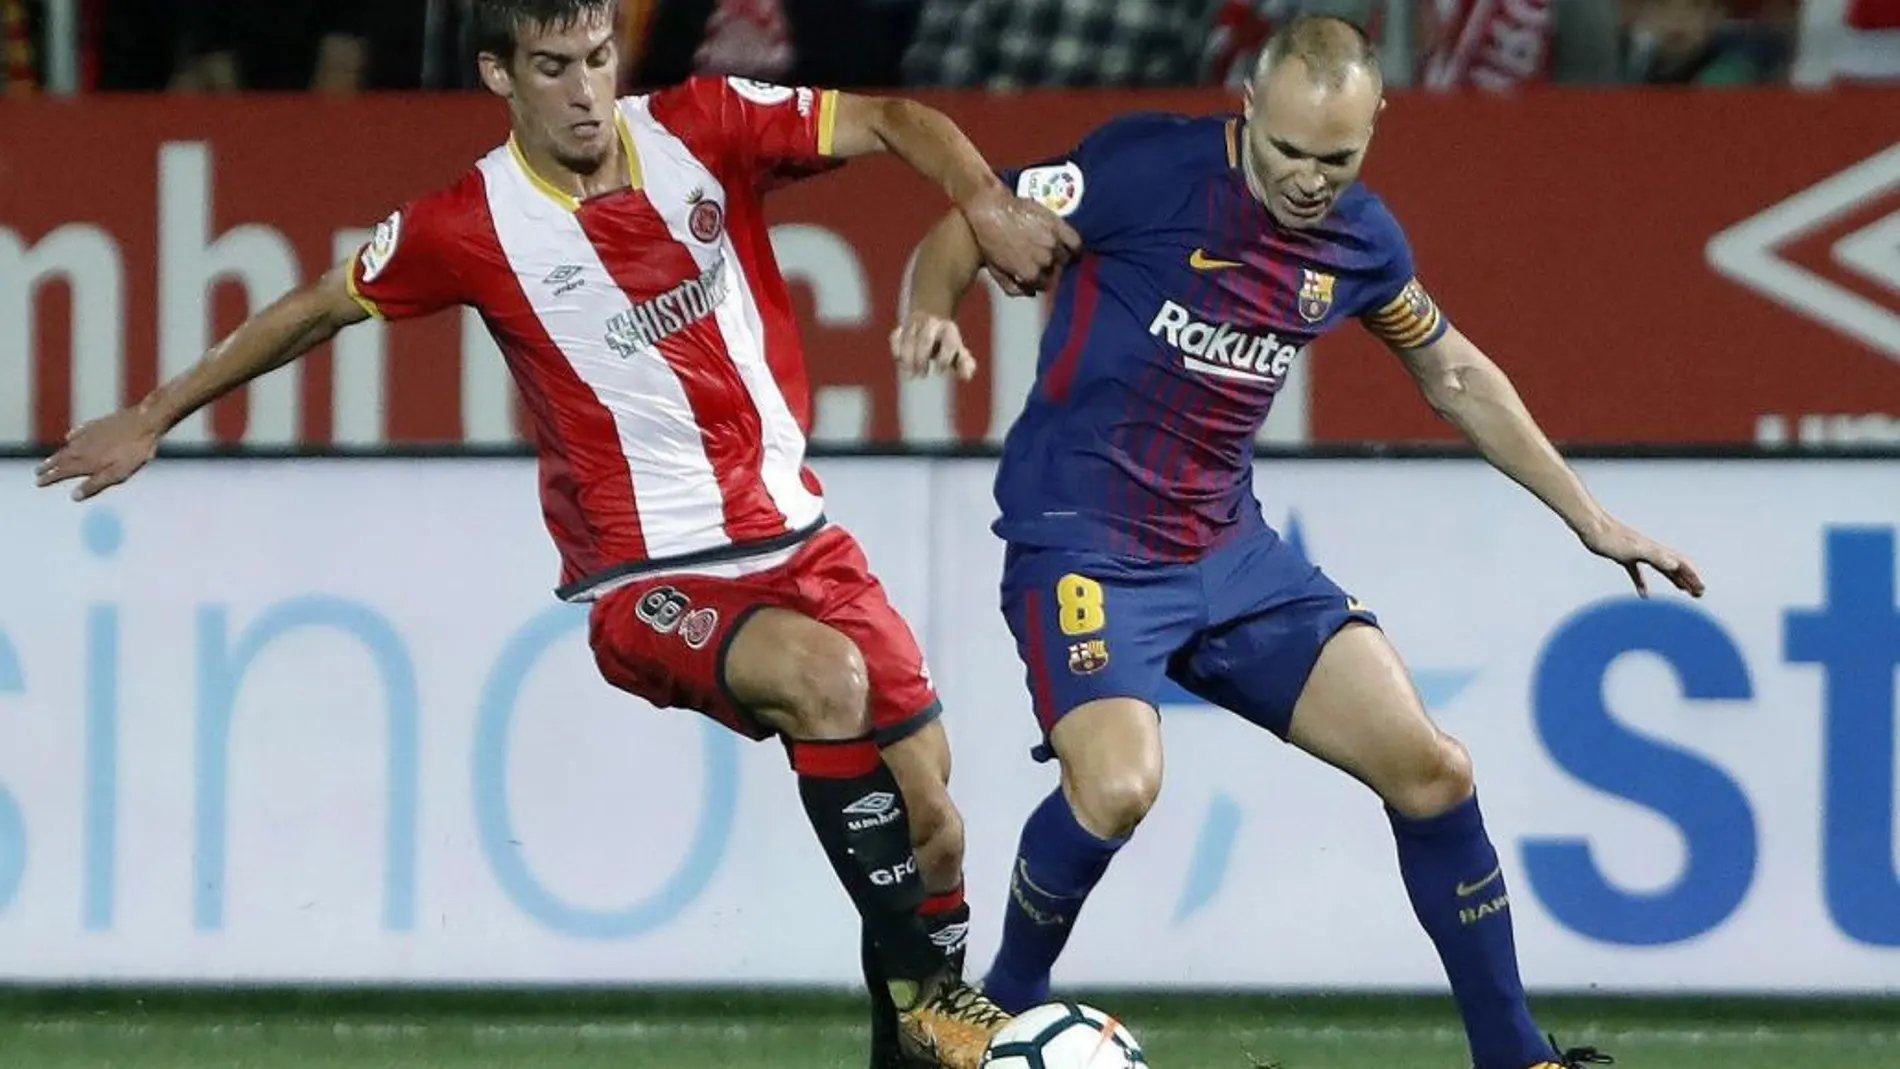 El jugador del Bracelona Andrés Iniesta, intenta avanzar ante la presencia del jugador del Girona Ramalho